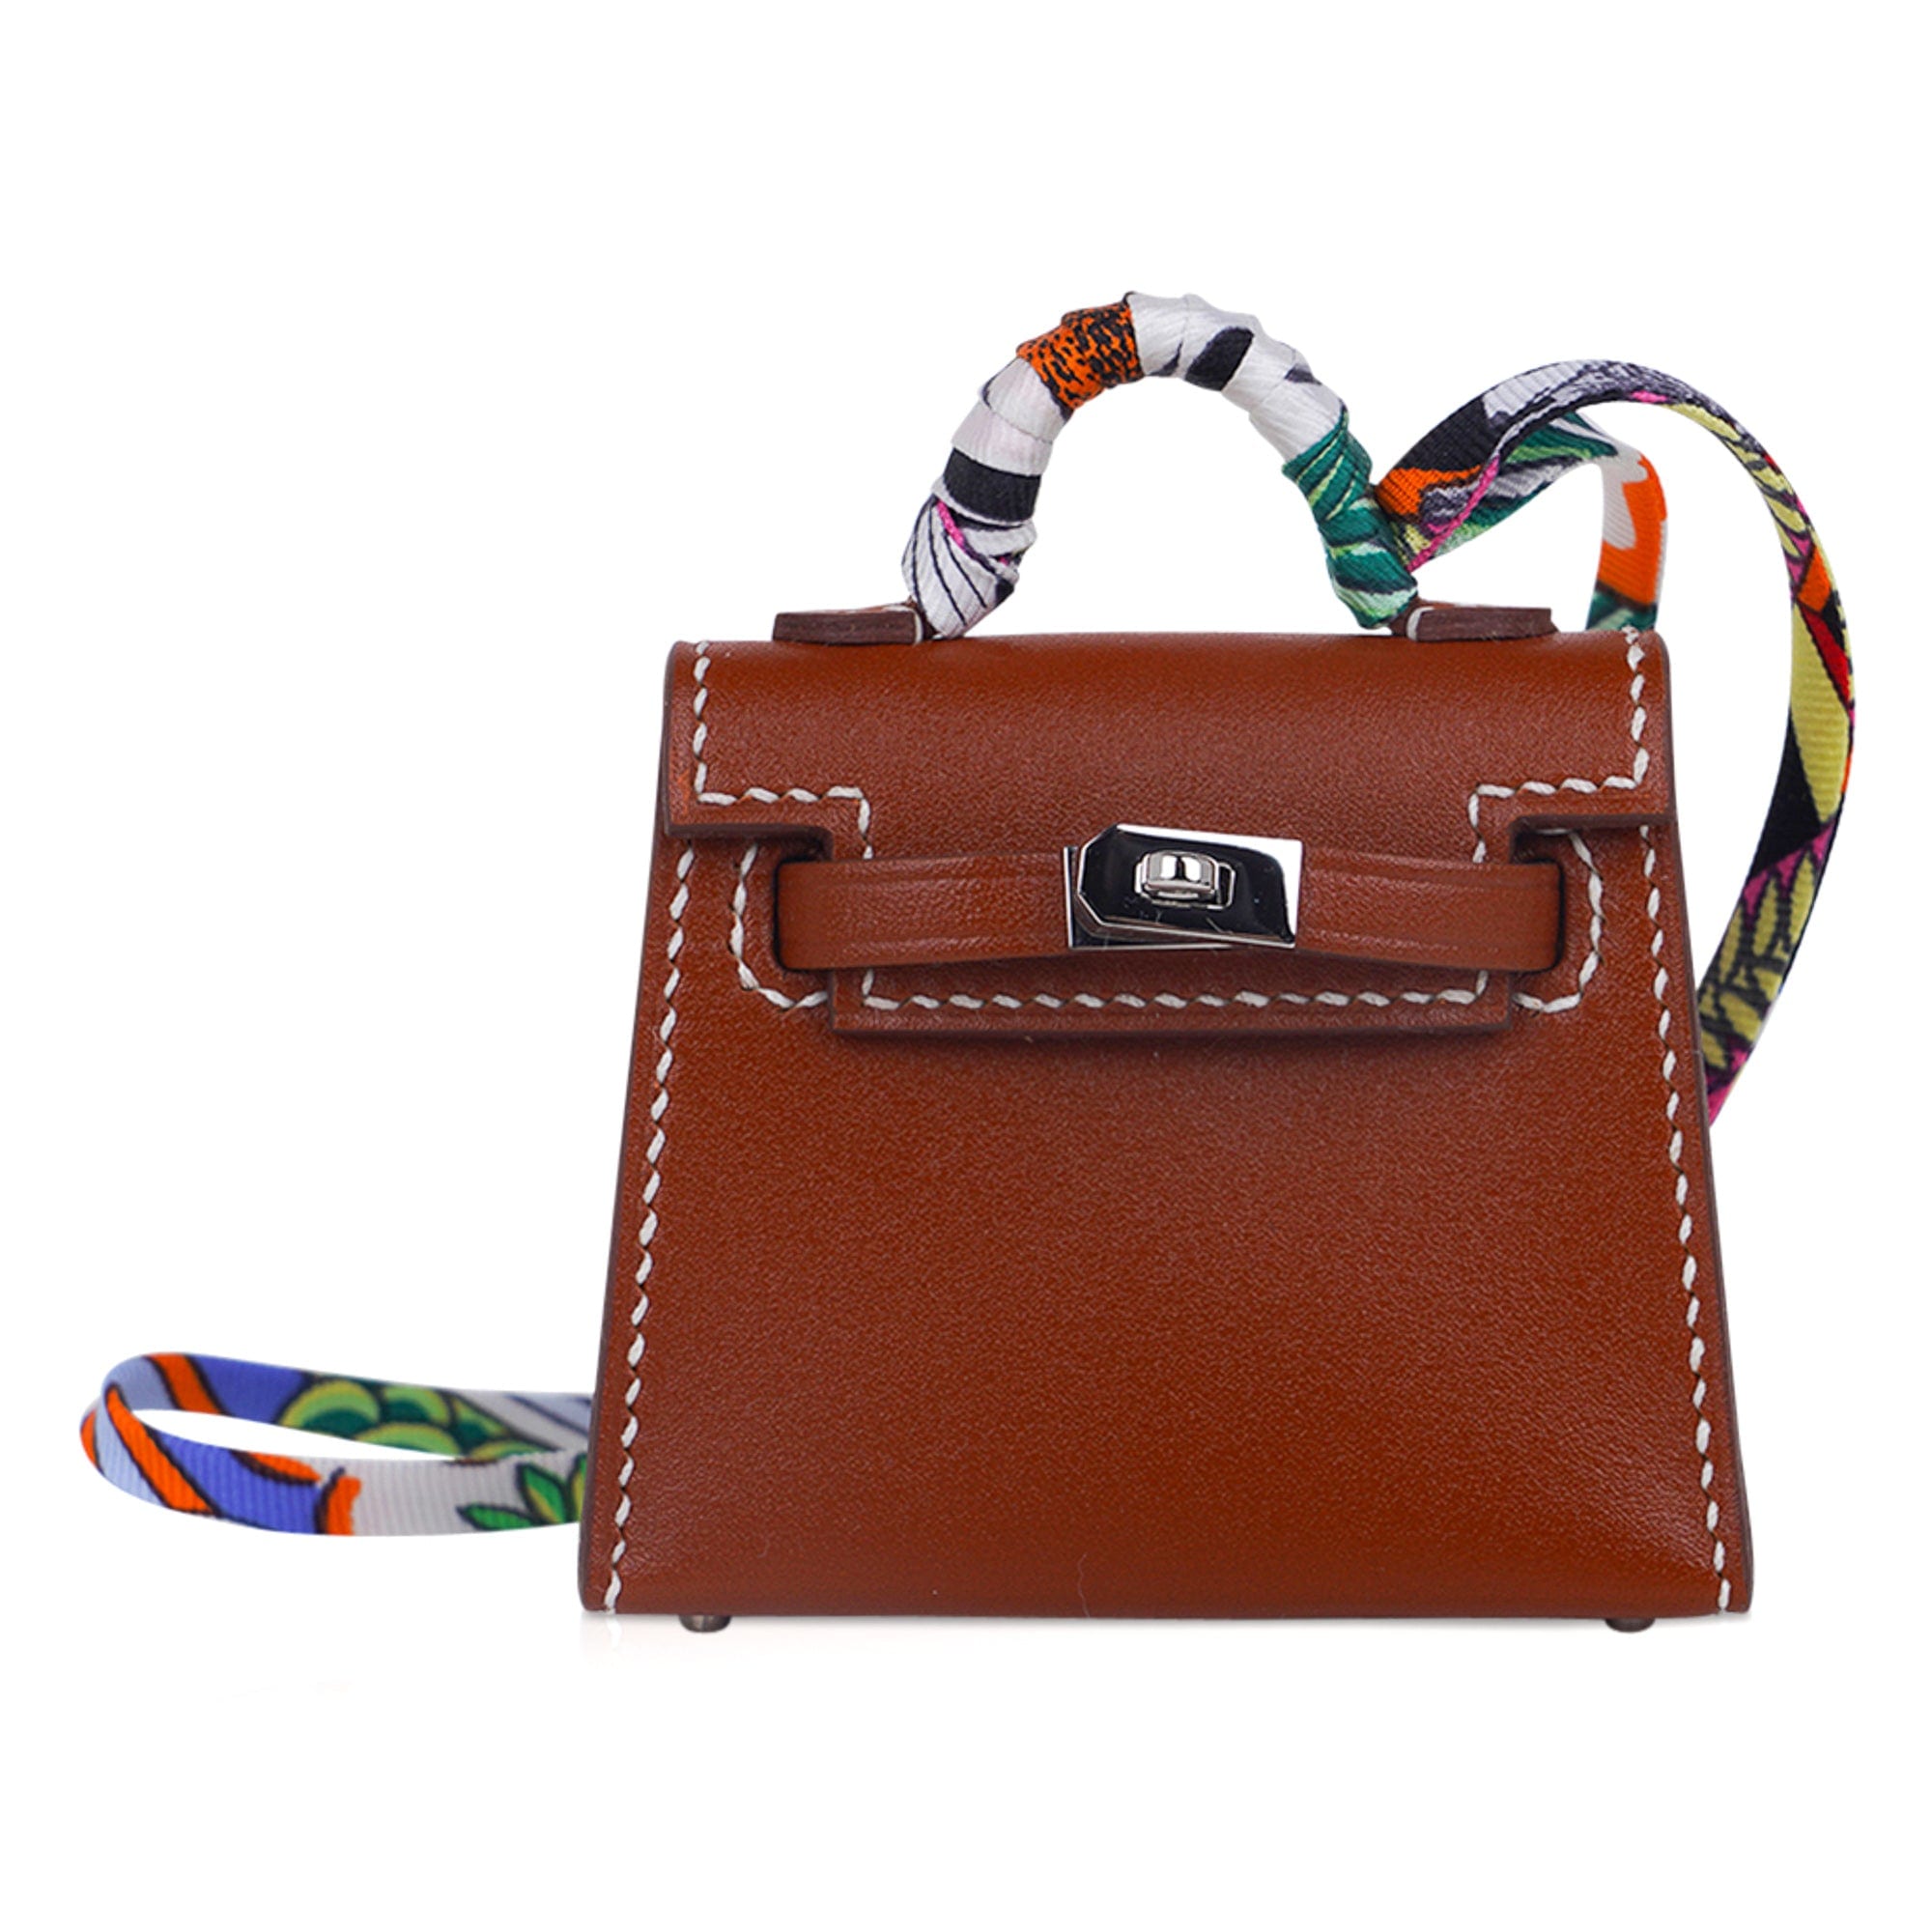 Hermes Charm Shopping Bag Orange Sac Birkin Kelly Box… - Gem